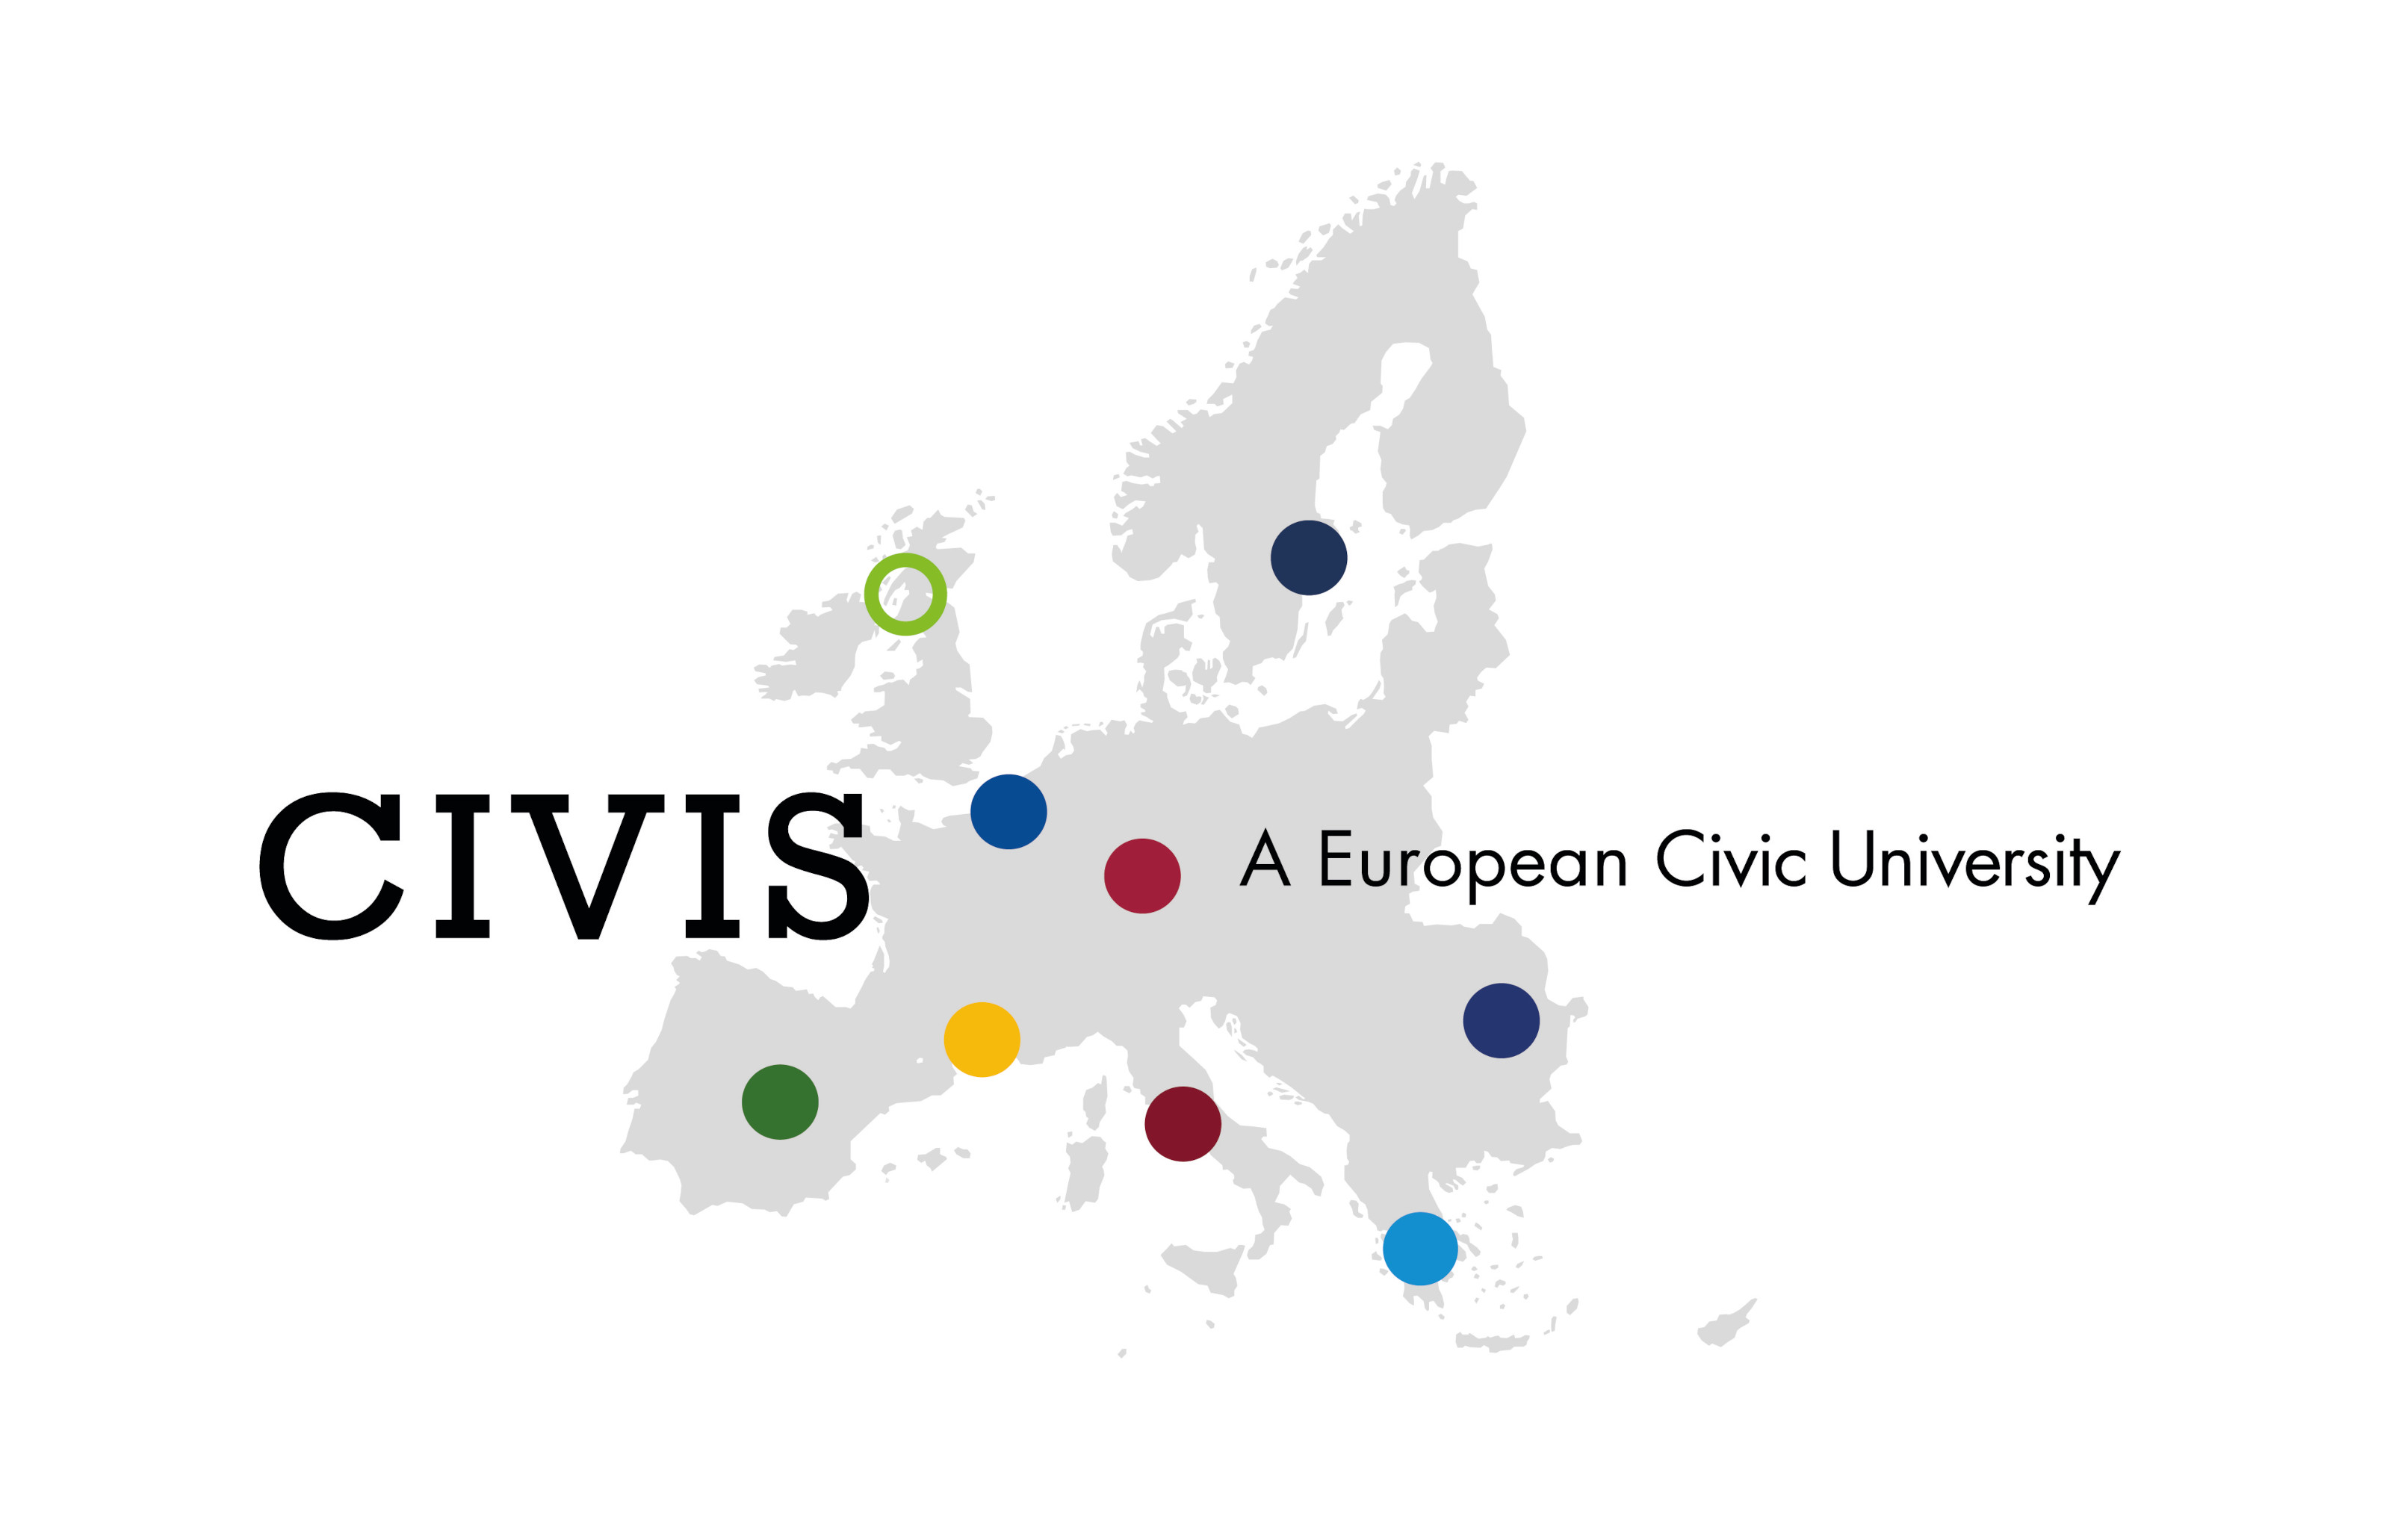 Das Bild zeigt das Logo von CIVIS, eine graue Umrisskarte von Europa, auf der mit bunten Punkten die Standorte der teilnehmenden Universitäten markiert sind.